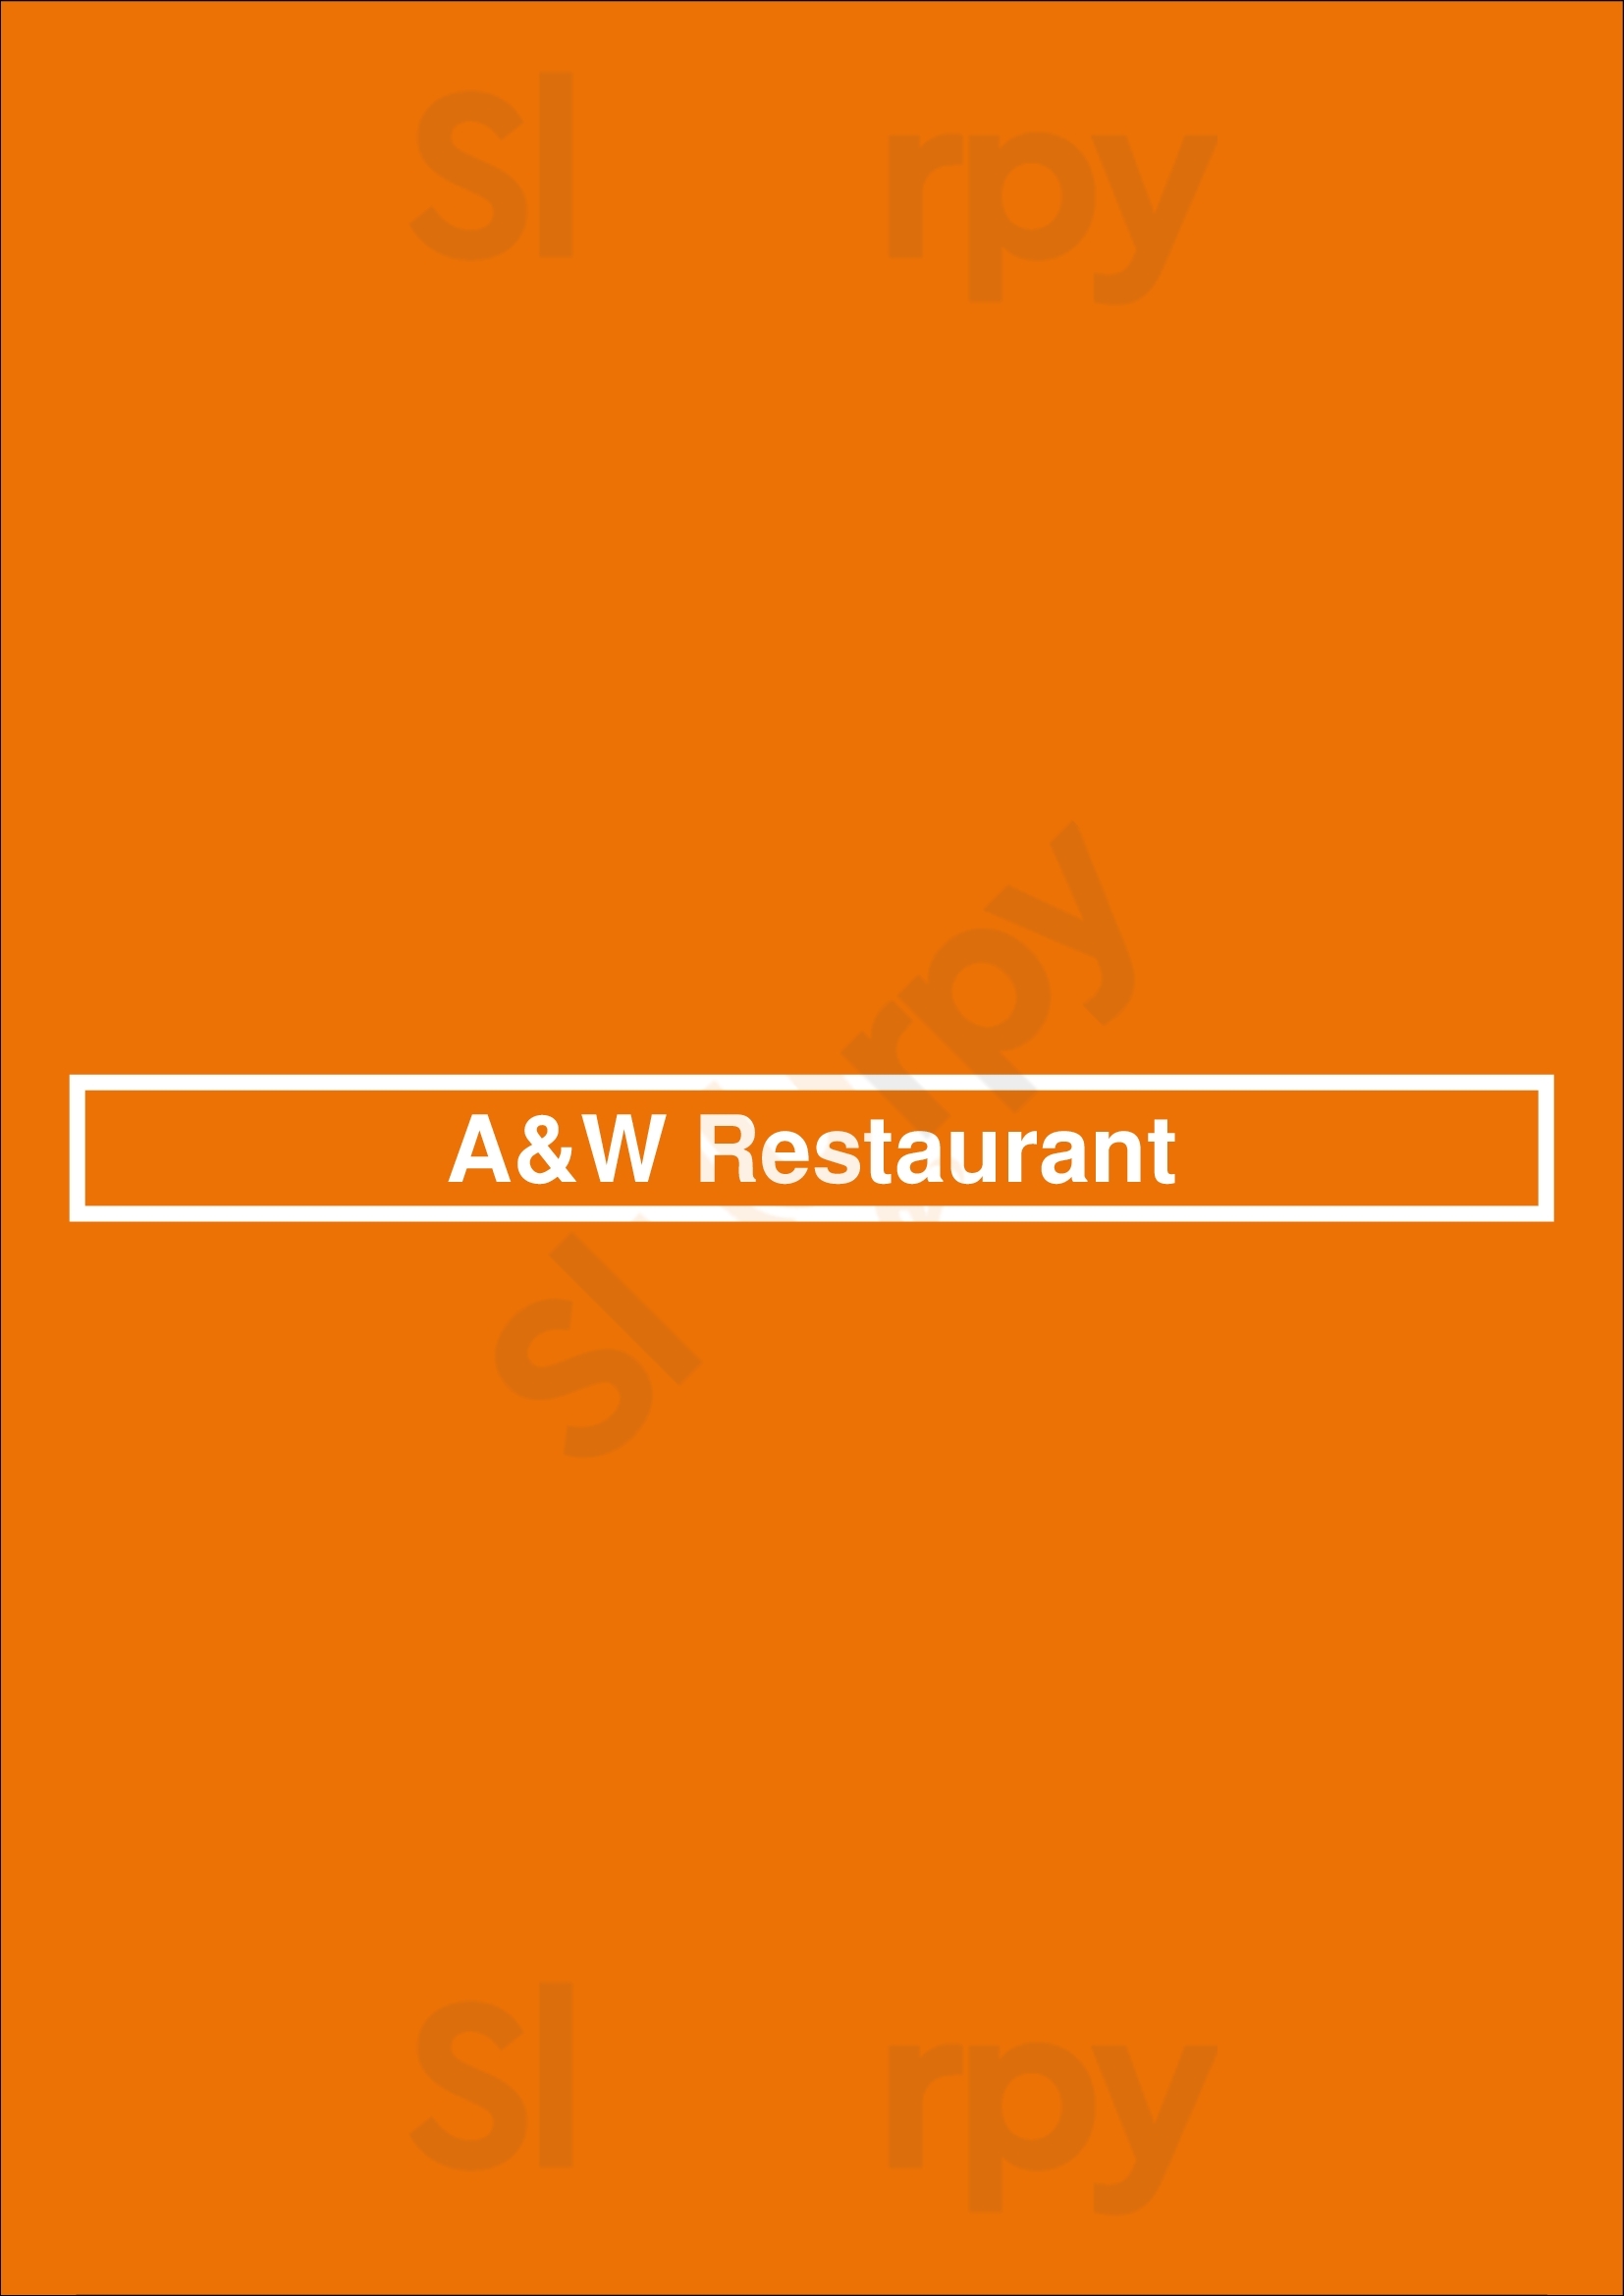 A&w Restaurant Burnaby Menu - 1